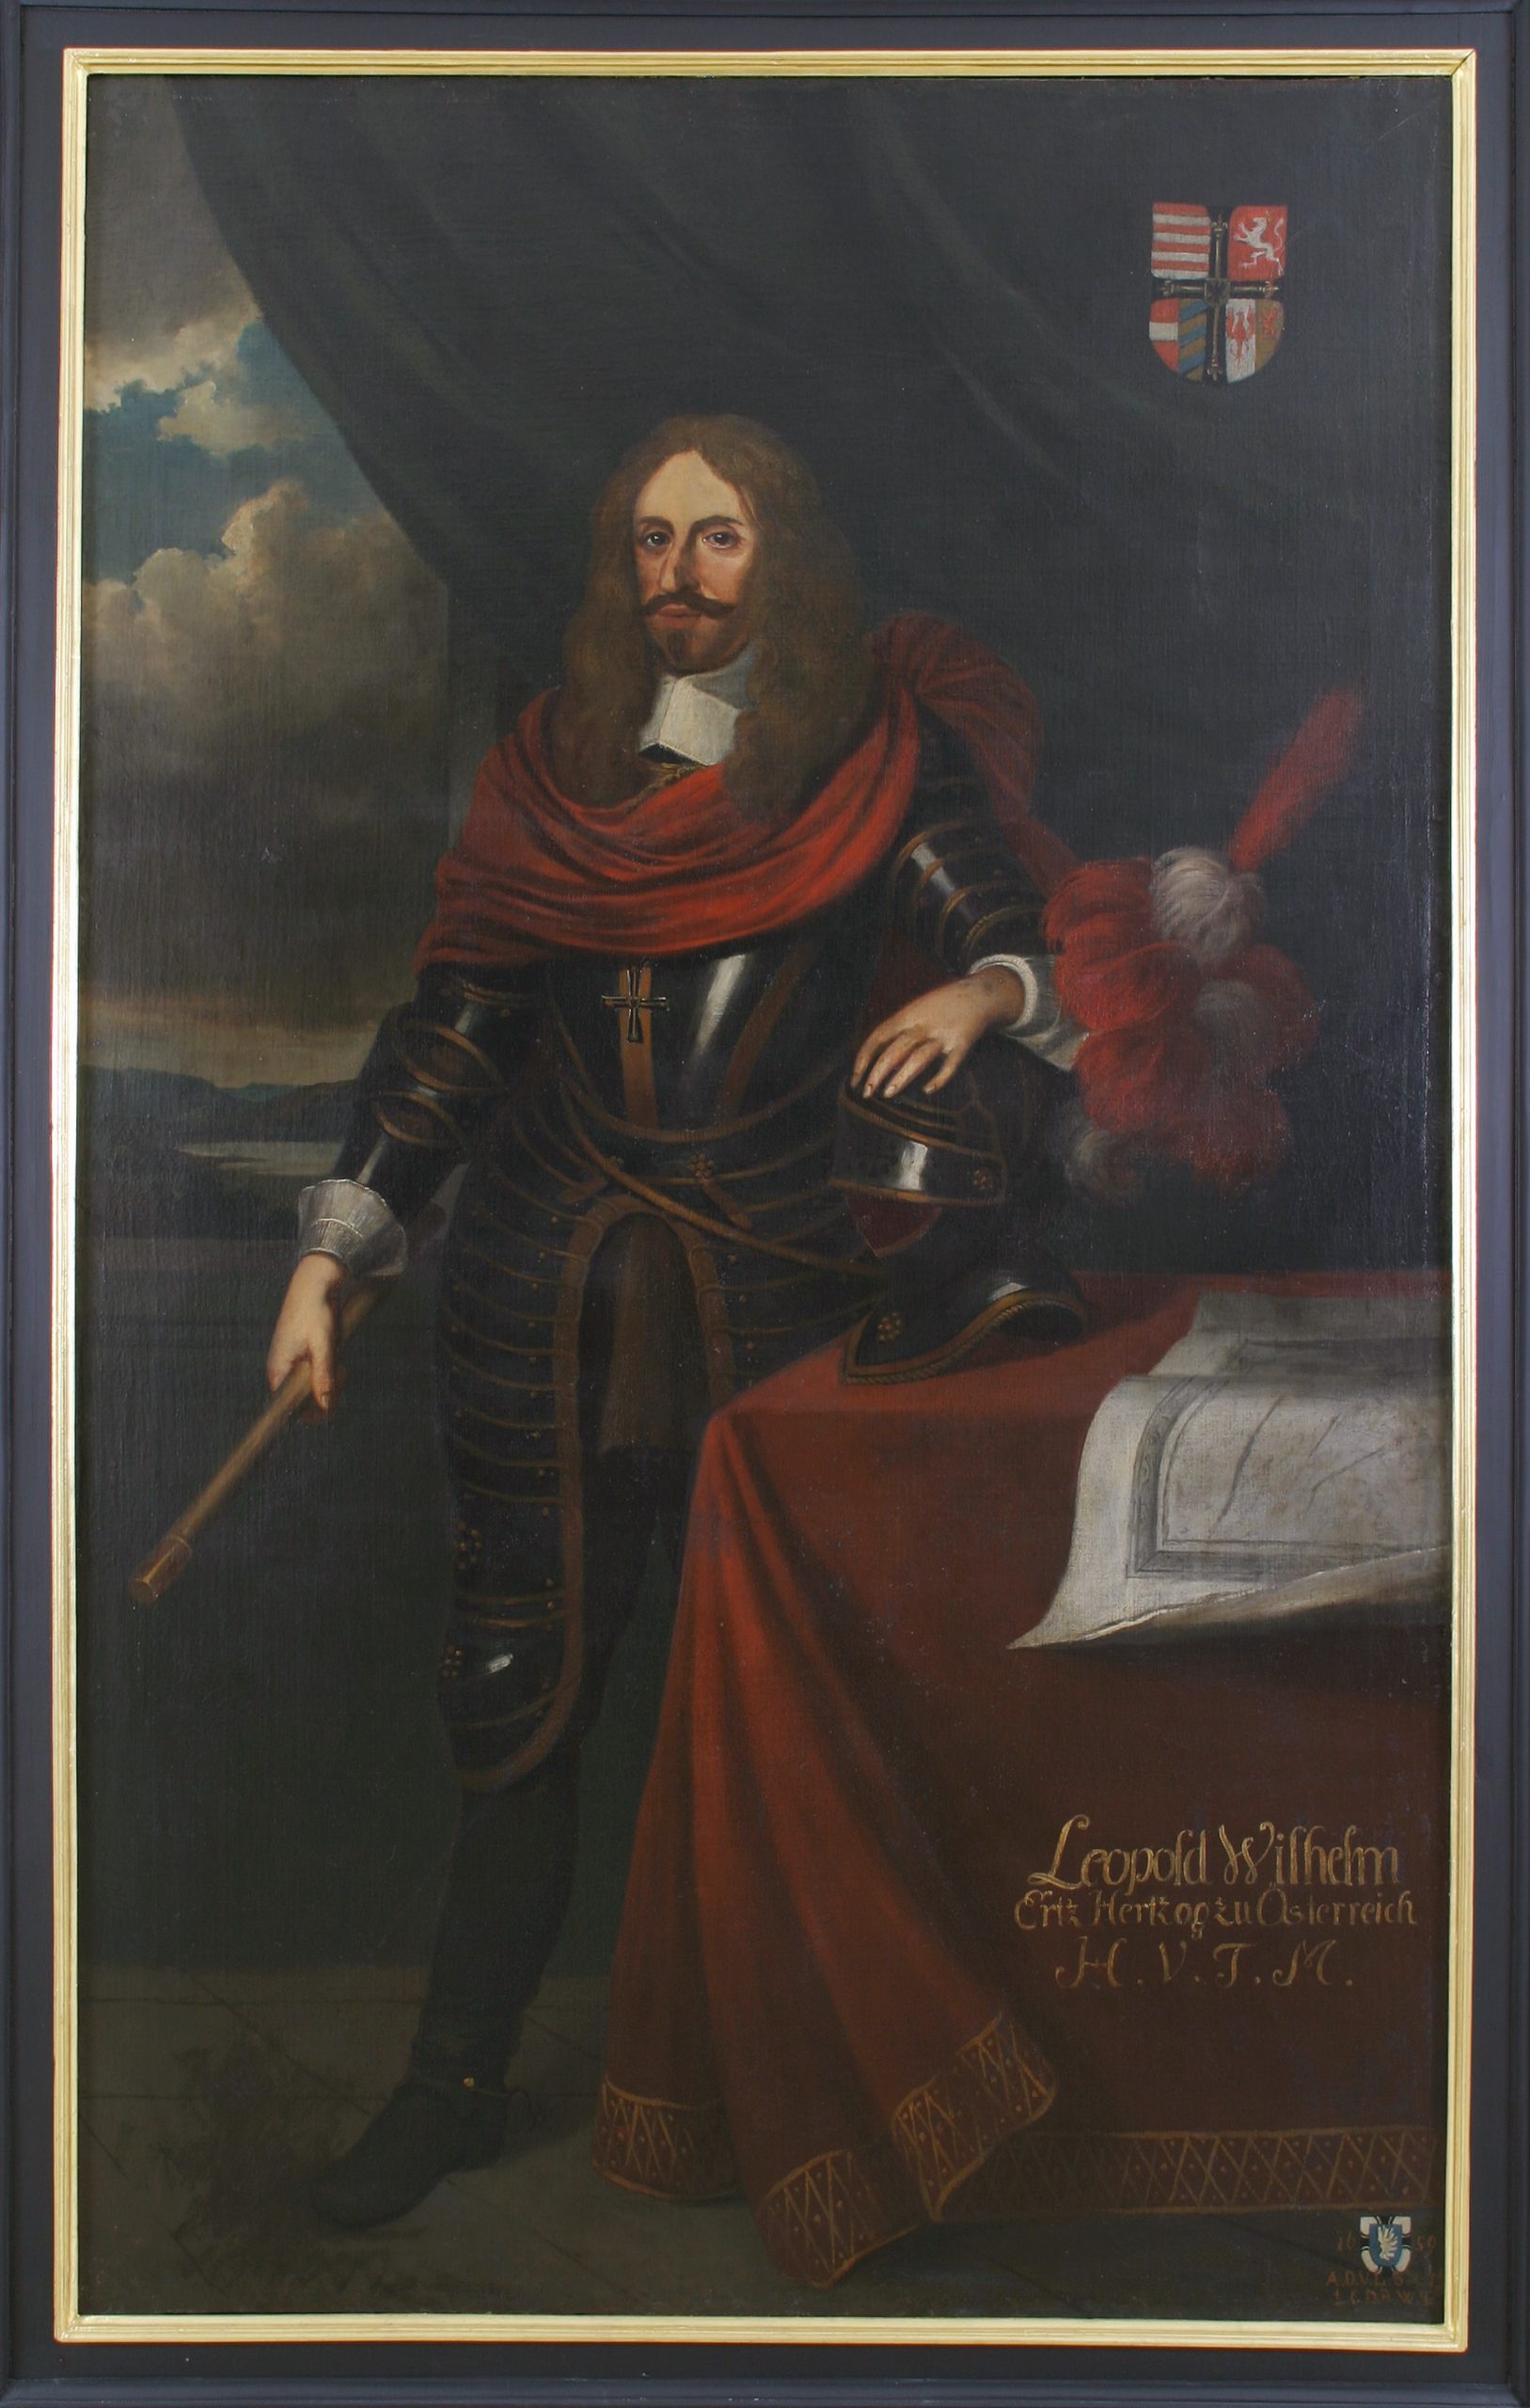 Das Bild zeigt ein Porträt des Hochmeisters Leopold Wilhelm von Österreich. Er trägt eine Ritterrüstung und ein rotes Tuch um die Schultern. Neben ihm liegt ein Ritterhelm, auf den er seinen linken Arm abstützt. Rechts oben in der Ecke ist das Hochmeisterwappen abgedruckt.